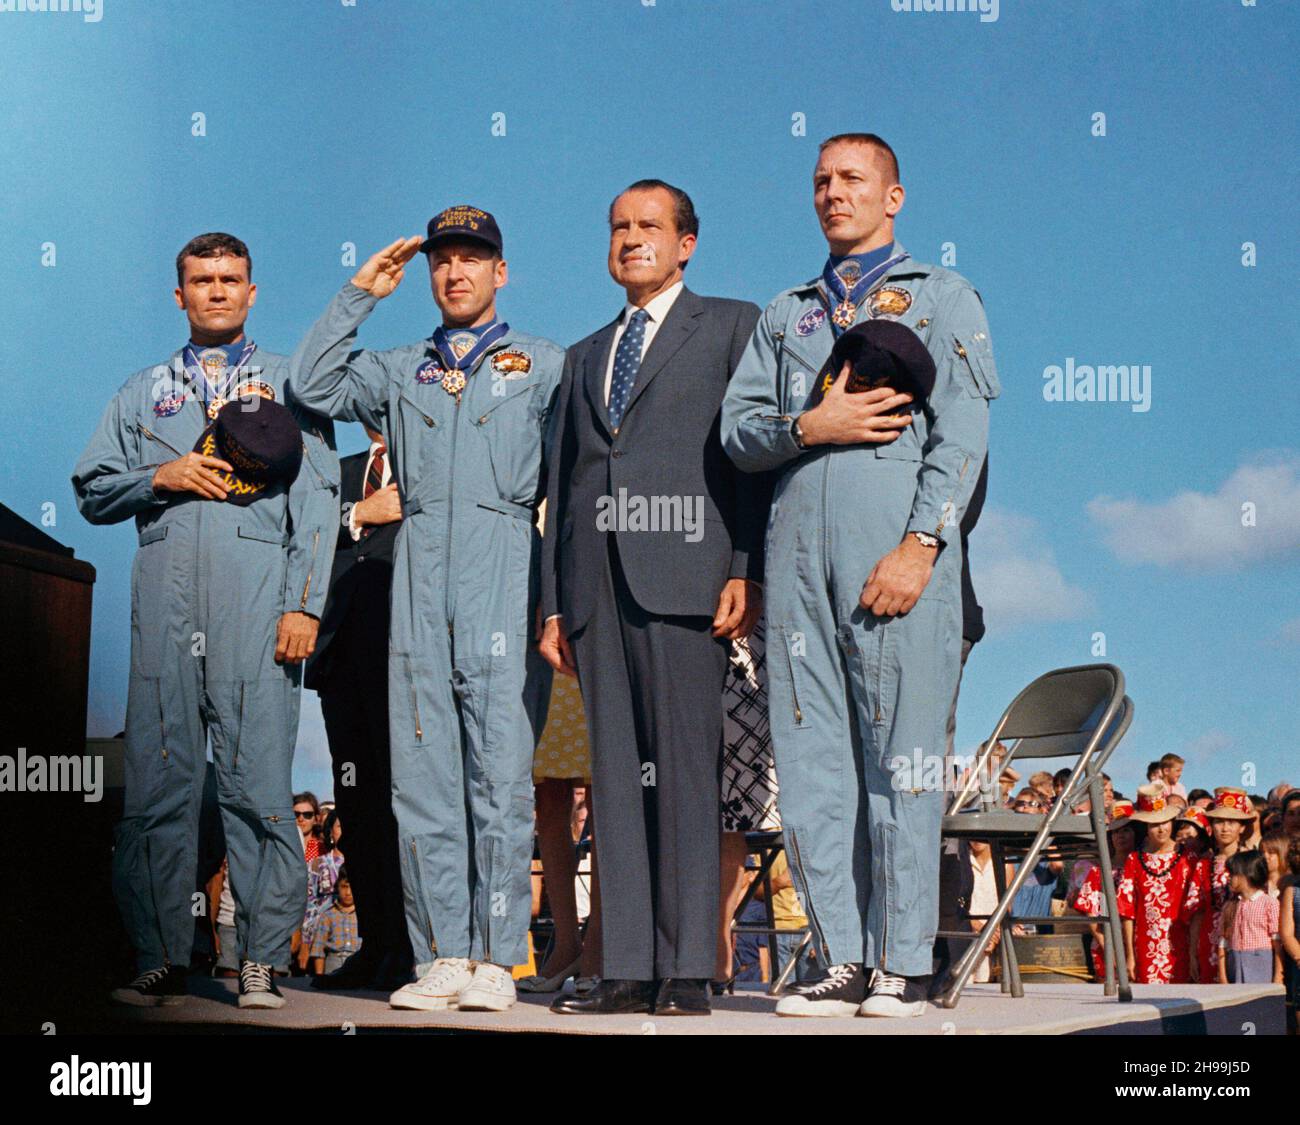 El presidente Richard M. Nixon y los miembros de la tripulación del Apollo 13 rinden homenaje a la bandera de los Estados Unidos durante las ceremonias posteriores a la misión en la Base de la Fuerza Aérea de Hickam, Hawai. Los astronautas James A. Lovell Jr., (Capitán de la Marina de los Estados Unidos, saluda la bandera) comandante; John L. Swirgert Jr., piloto del módulo de mando (derecha); y Fred W. Haise Jr., piloto del módulo lunar (izquierda), fueron presentados la Medalla Presidencial de la Libertad por el Jefe Ejecutivo. El derroche del Apolo 13 ocurrió a las 12:07:44 p.m. (CST), el 17 de abril de 1970, aproximadamente un día y medio antes de la presentación del premio. Foto de stock